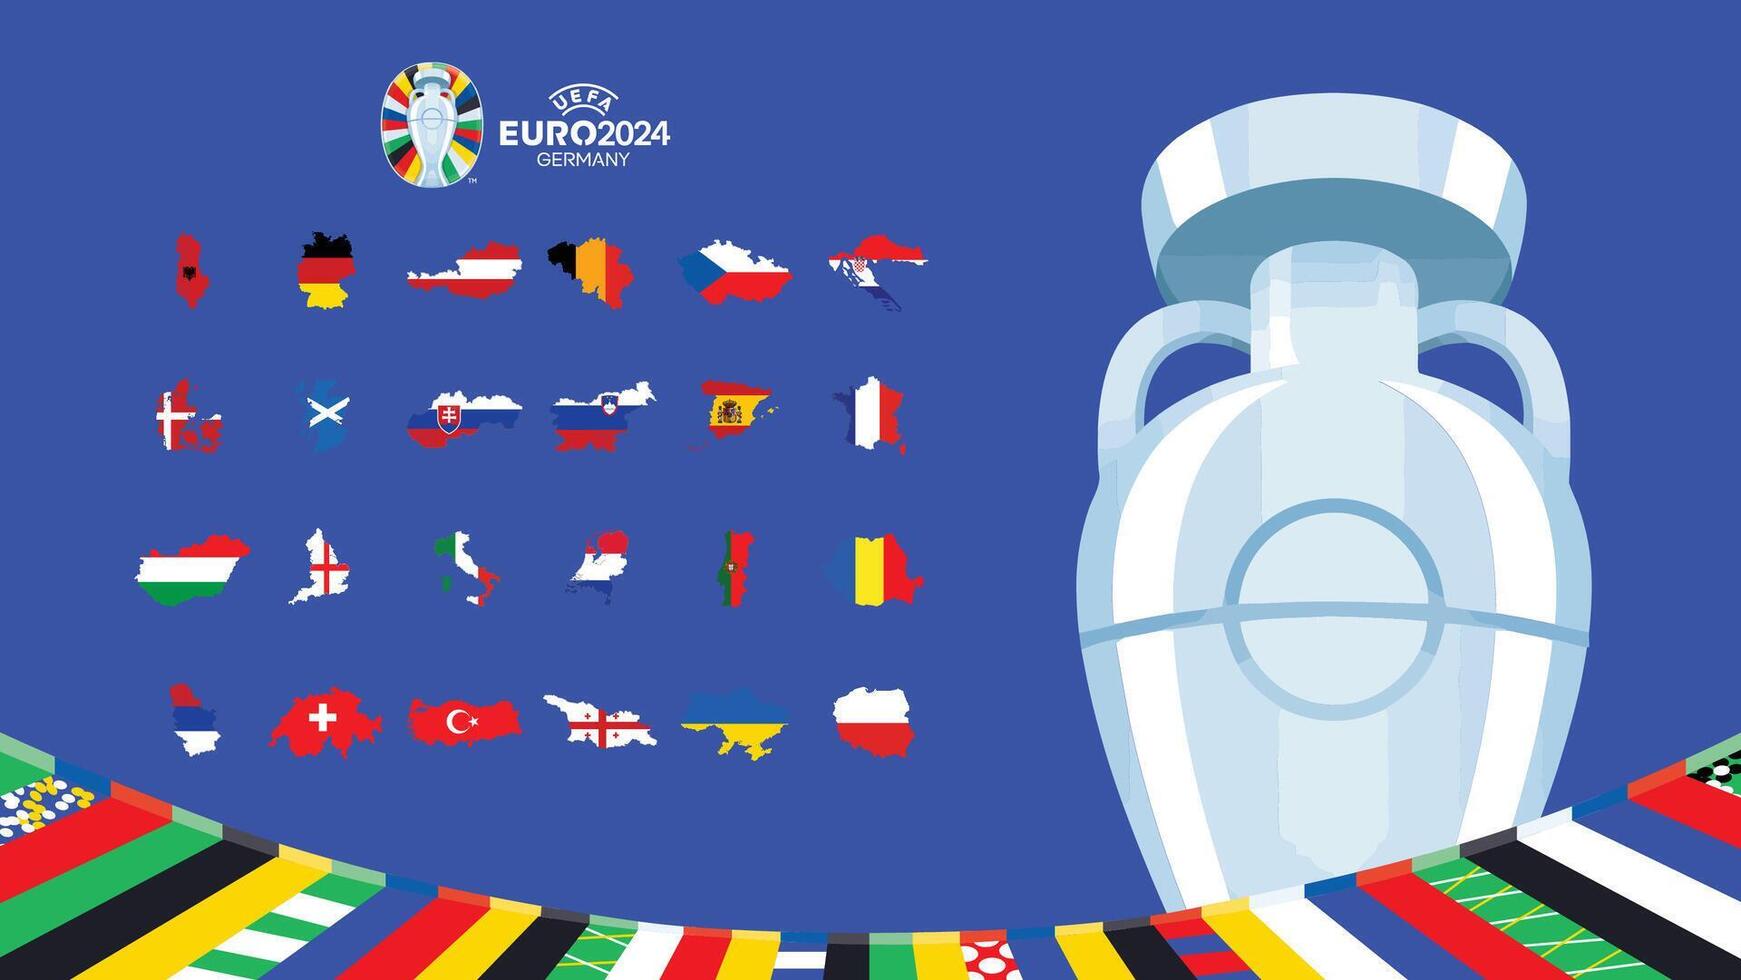 euro 2024 Tyskland flaggor Karta design med trofén symbol officiell logotyp europeisk fotboll slutlig illustration vektor